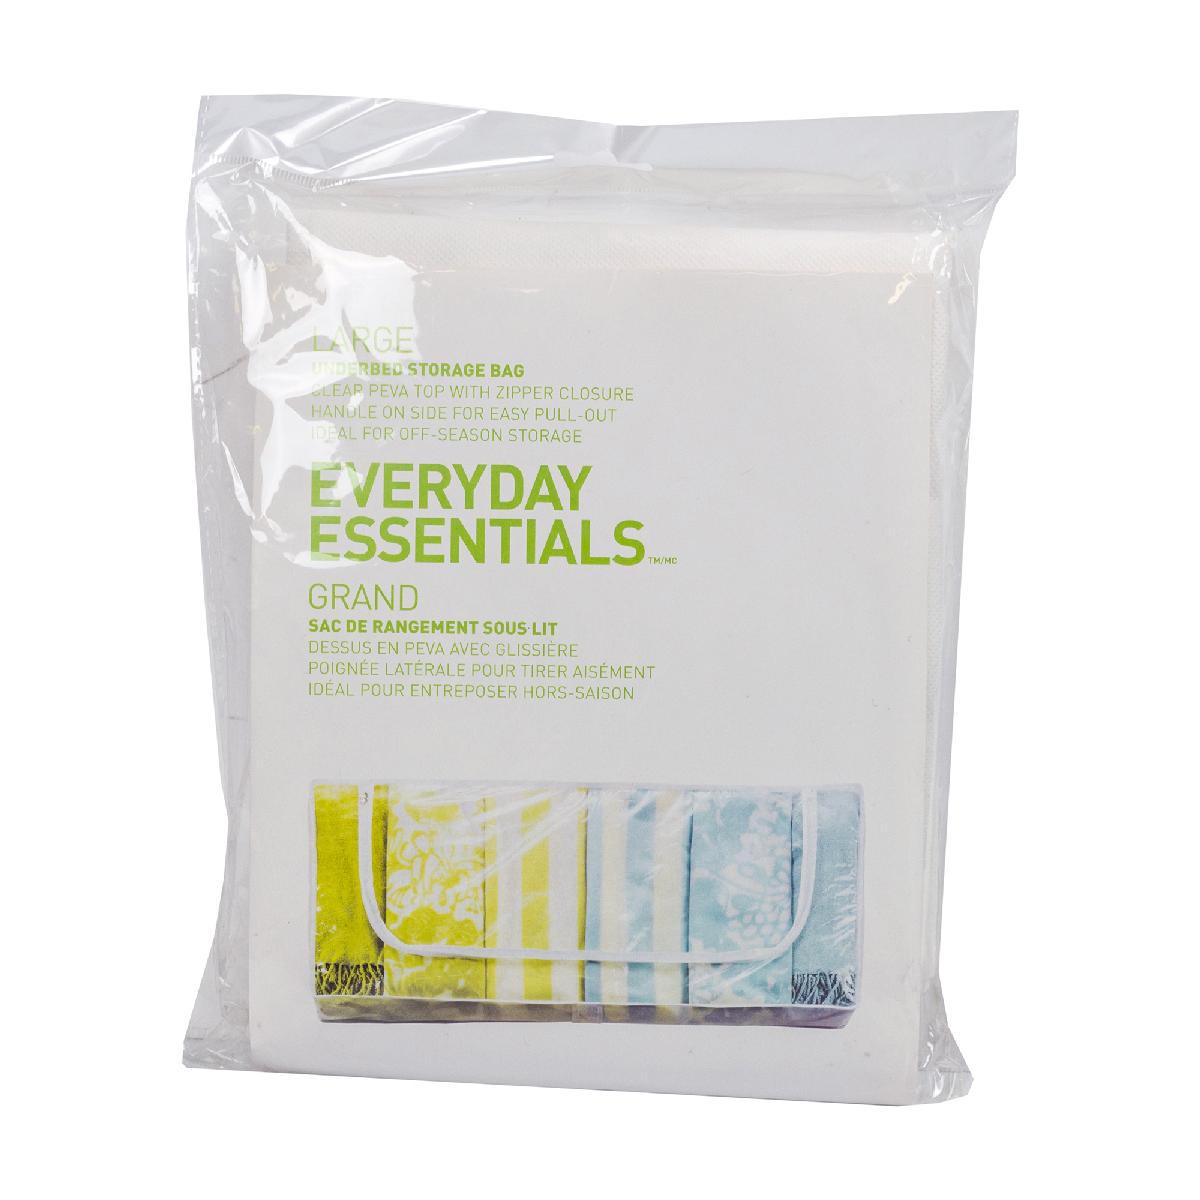 Everyday Essentials PEVA Underbed Bag, Large